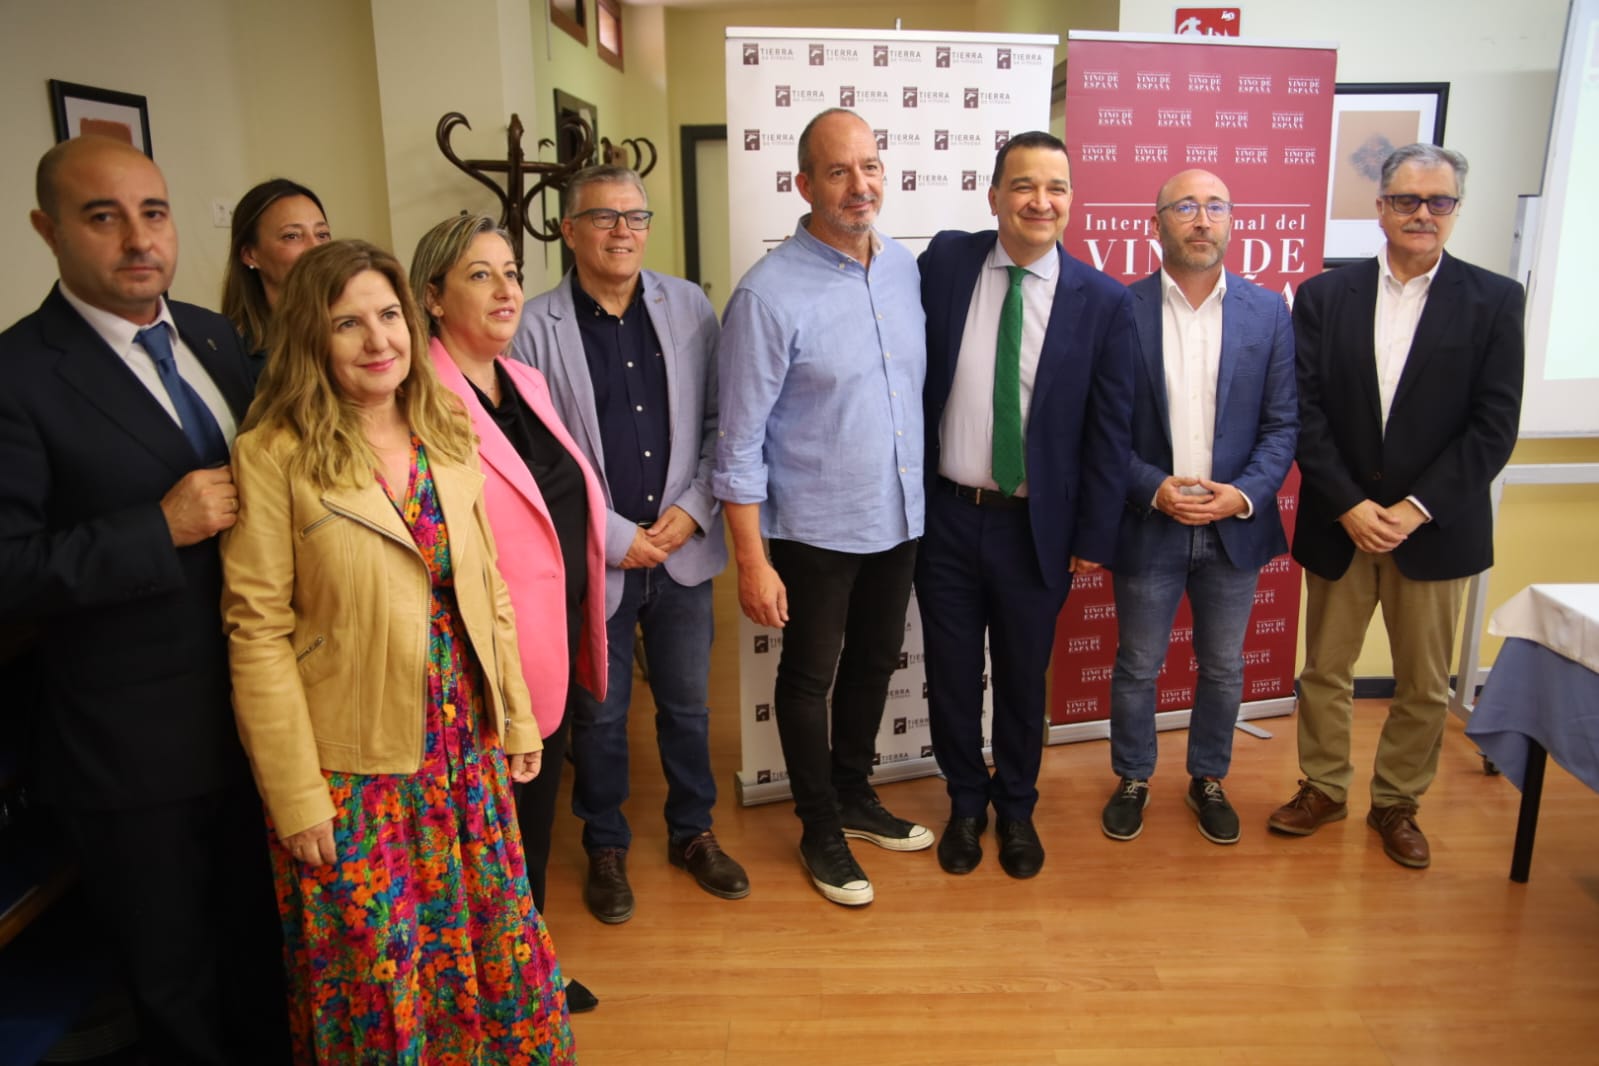 El Gobierno de Castilla-La Mancha pide a los futuros profesionales de la hostelería ofrecer siempre vino de la tierra